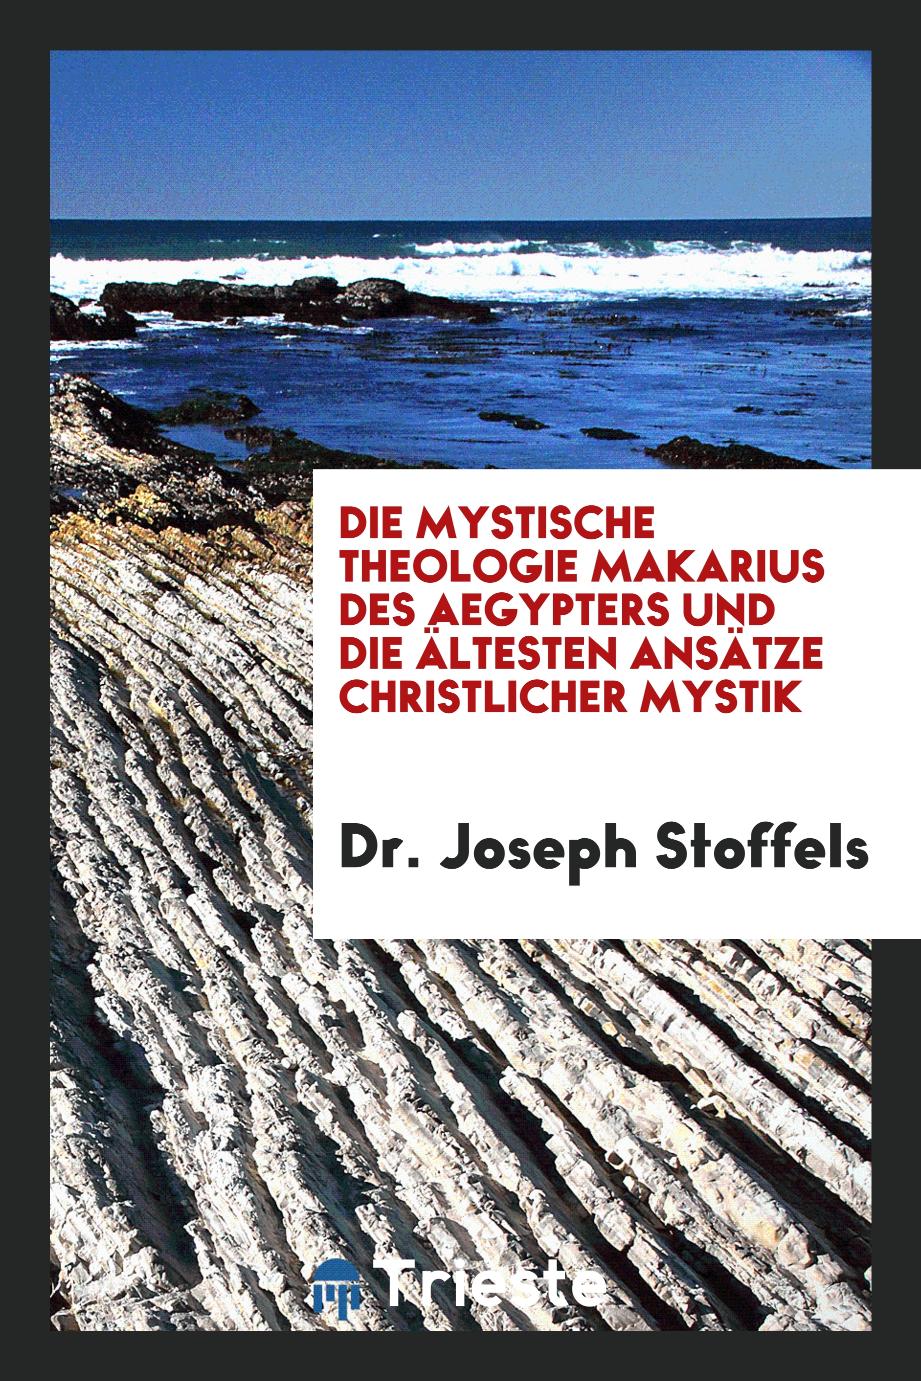 Dr. Joseph Stoffels - Die Mystische Theologie Makarius des Aegypters und die Ältesten Ansätze Christlicher Mystik